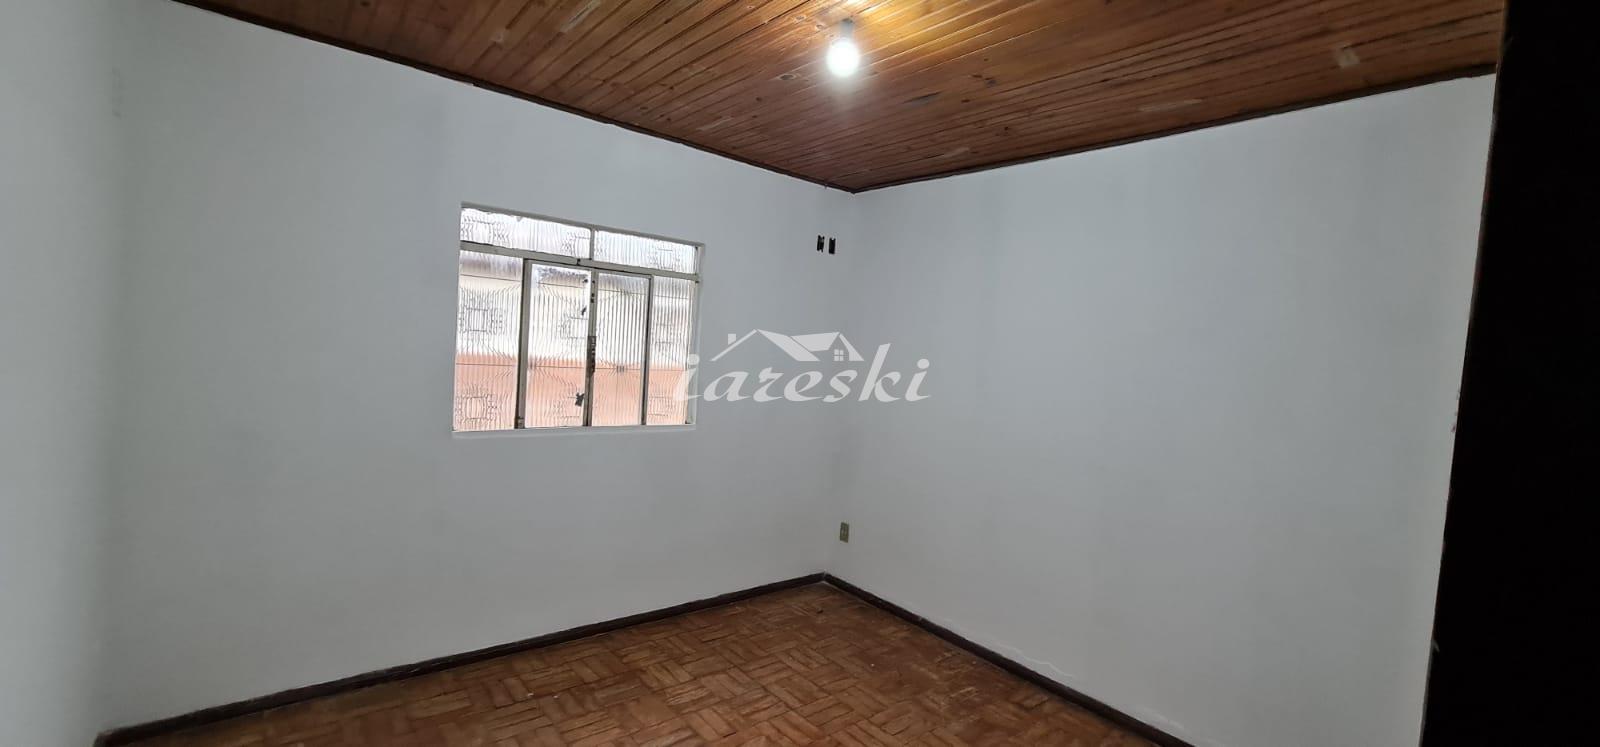 Casa com 3 dormitórios para locação Jardim Lancaster em Foz do Iguaçu/PR